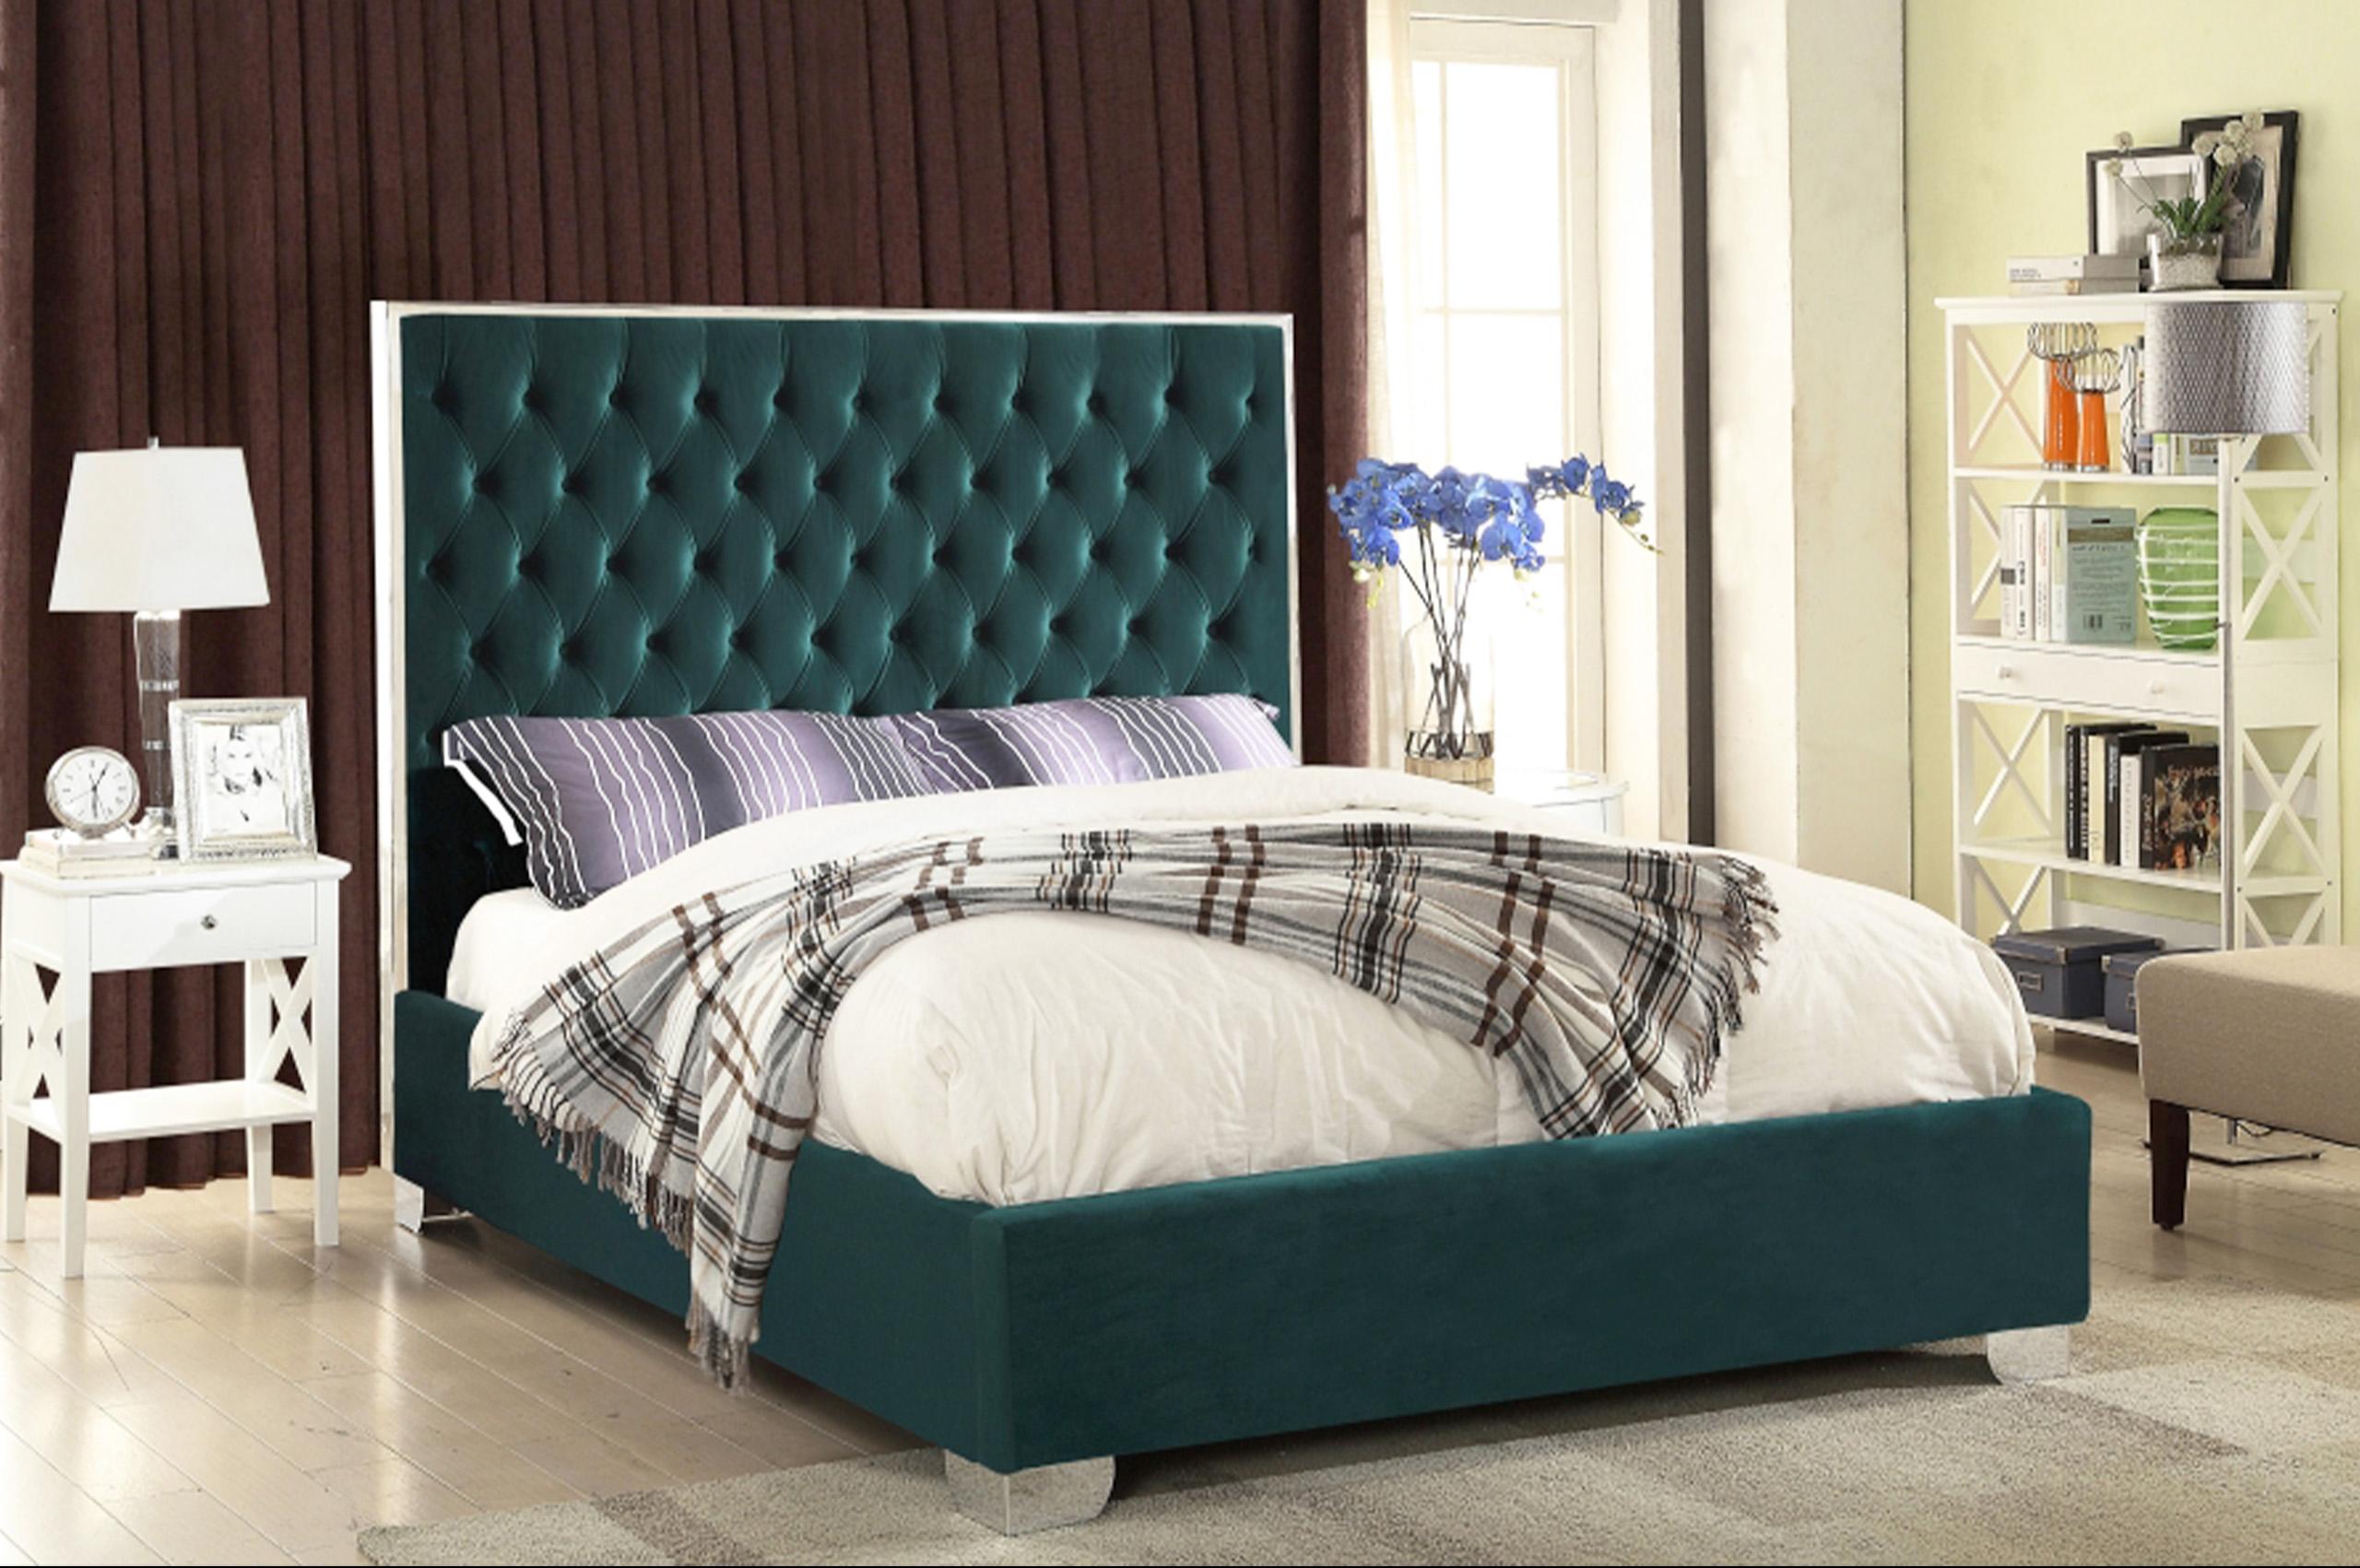 

    
Tufted Green Velvet Full Platform Bed Lexi Meridian Contemporary Modern
